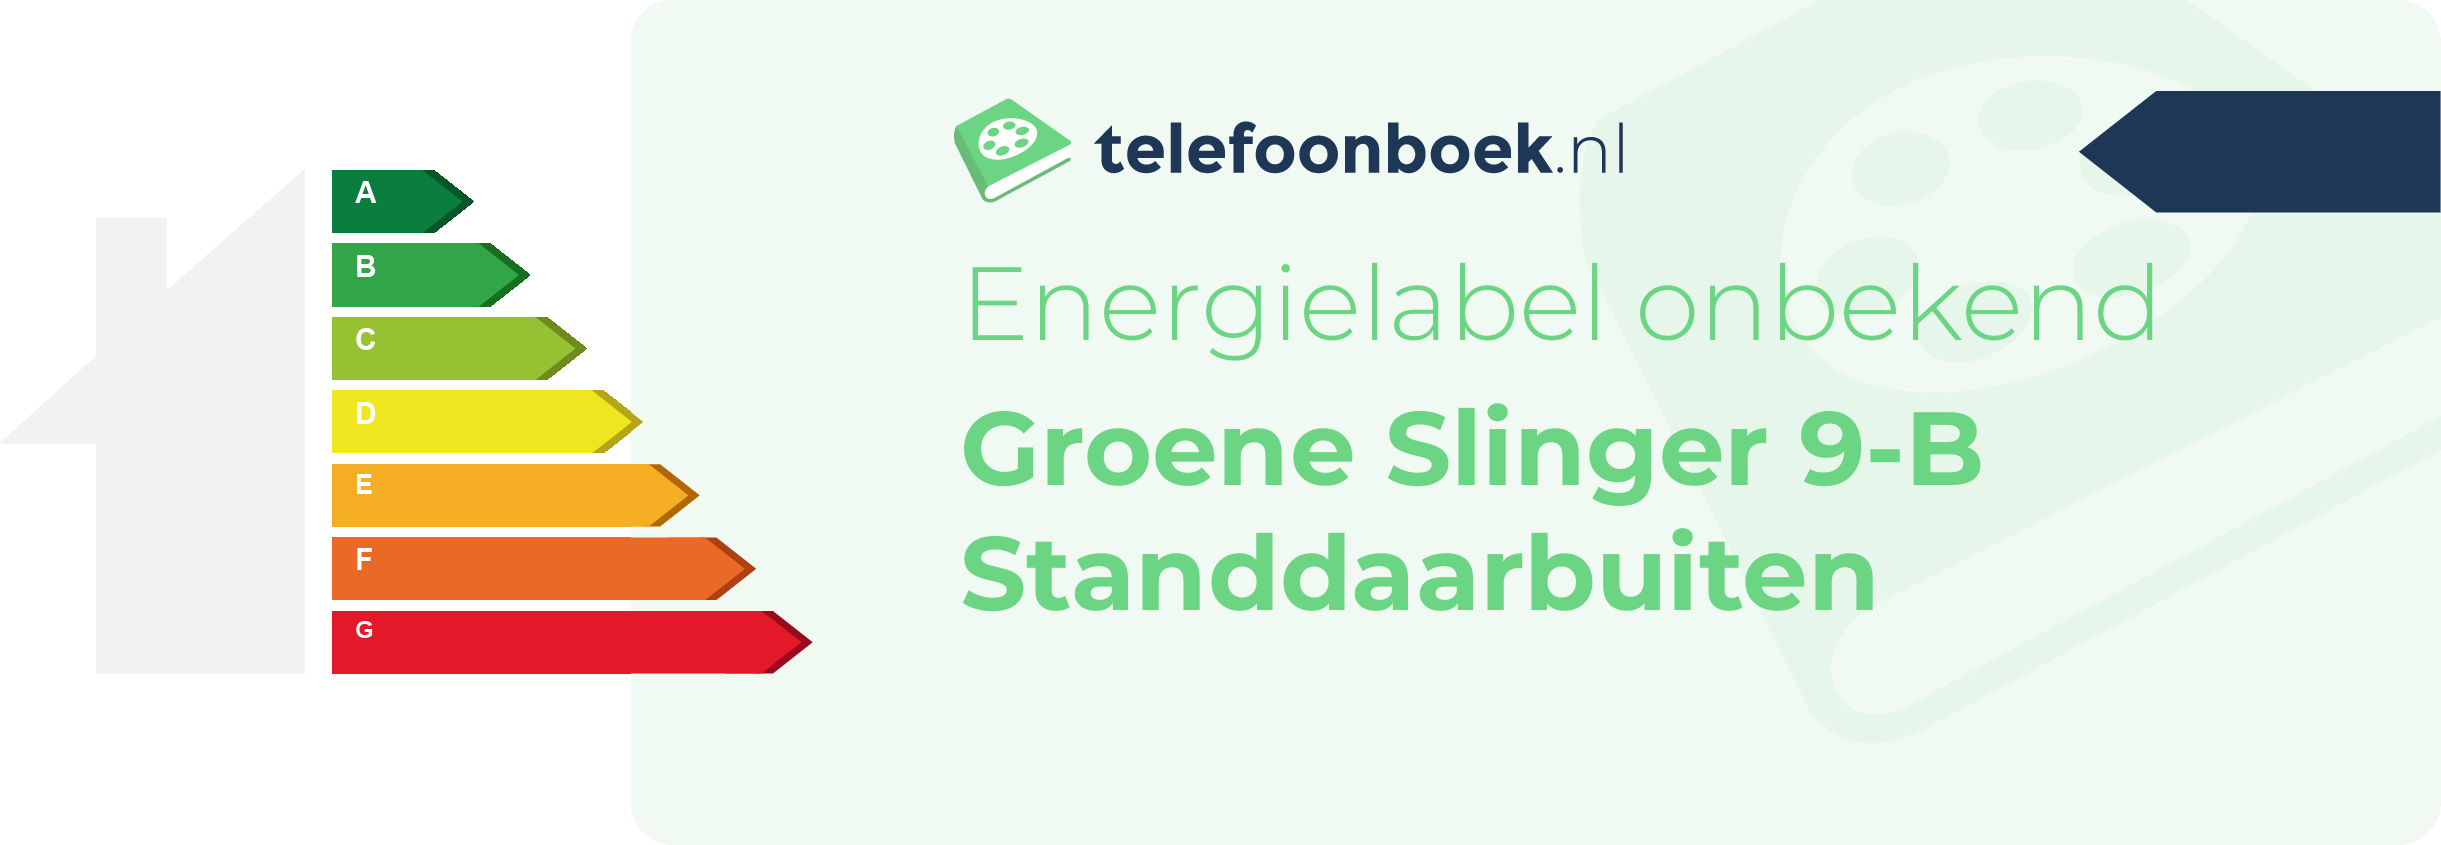 Energielabel Groene Slinger 9-B Standdaarbuiten